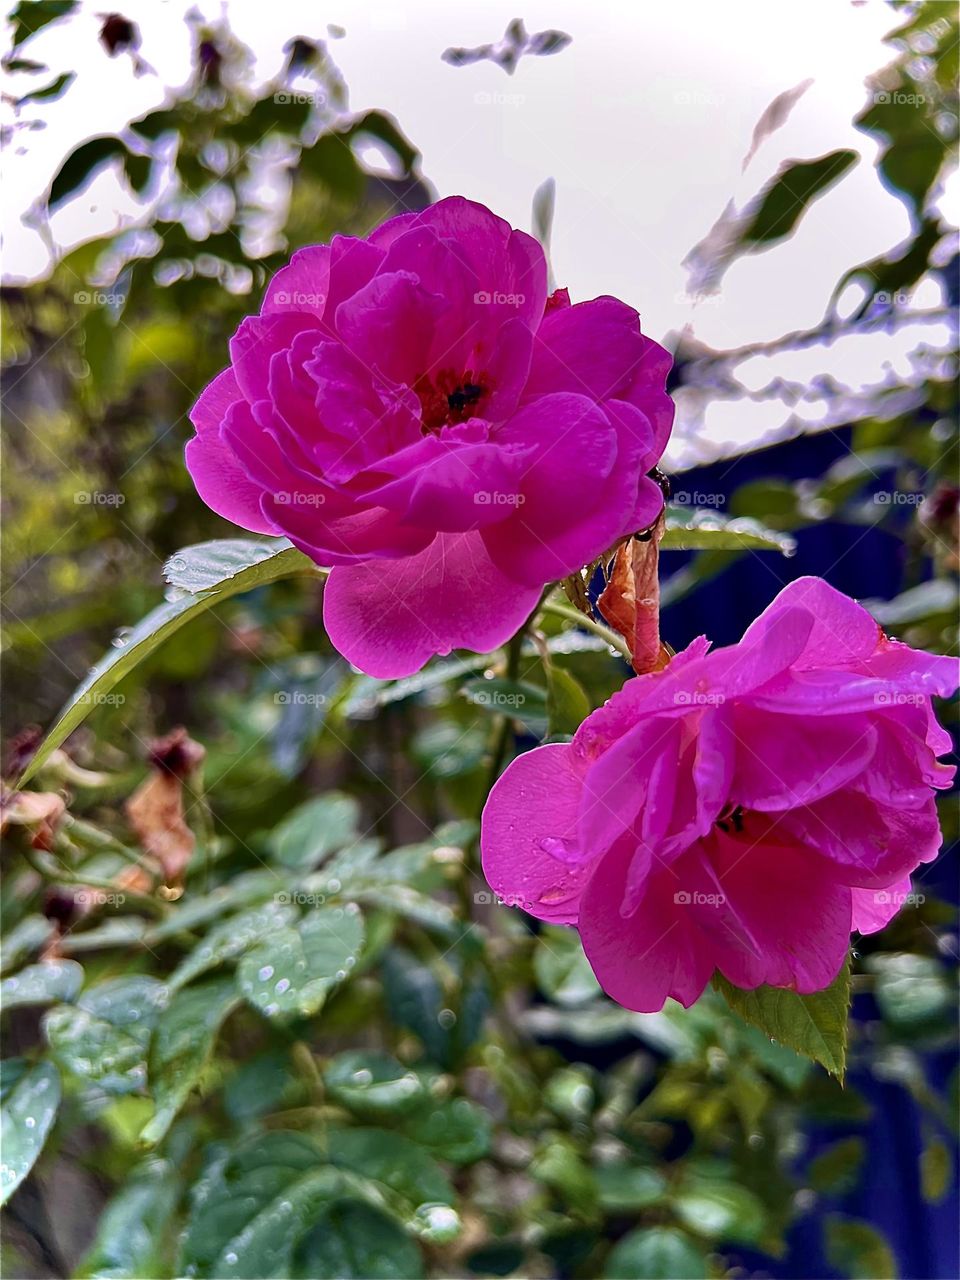 Rose beauty’s